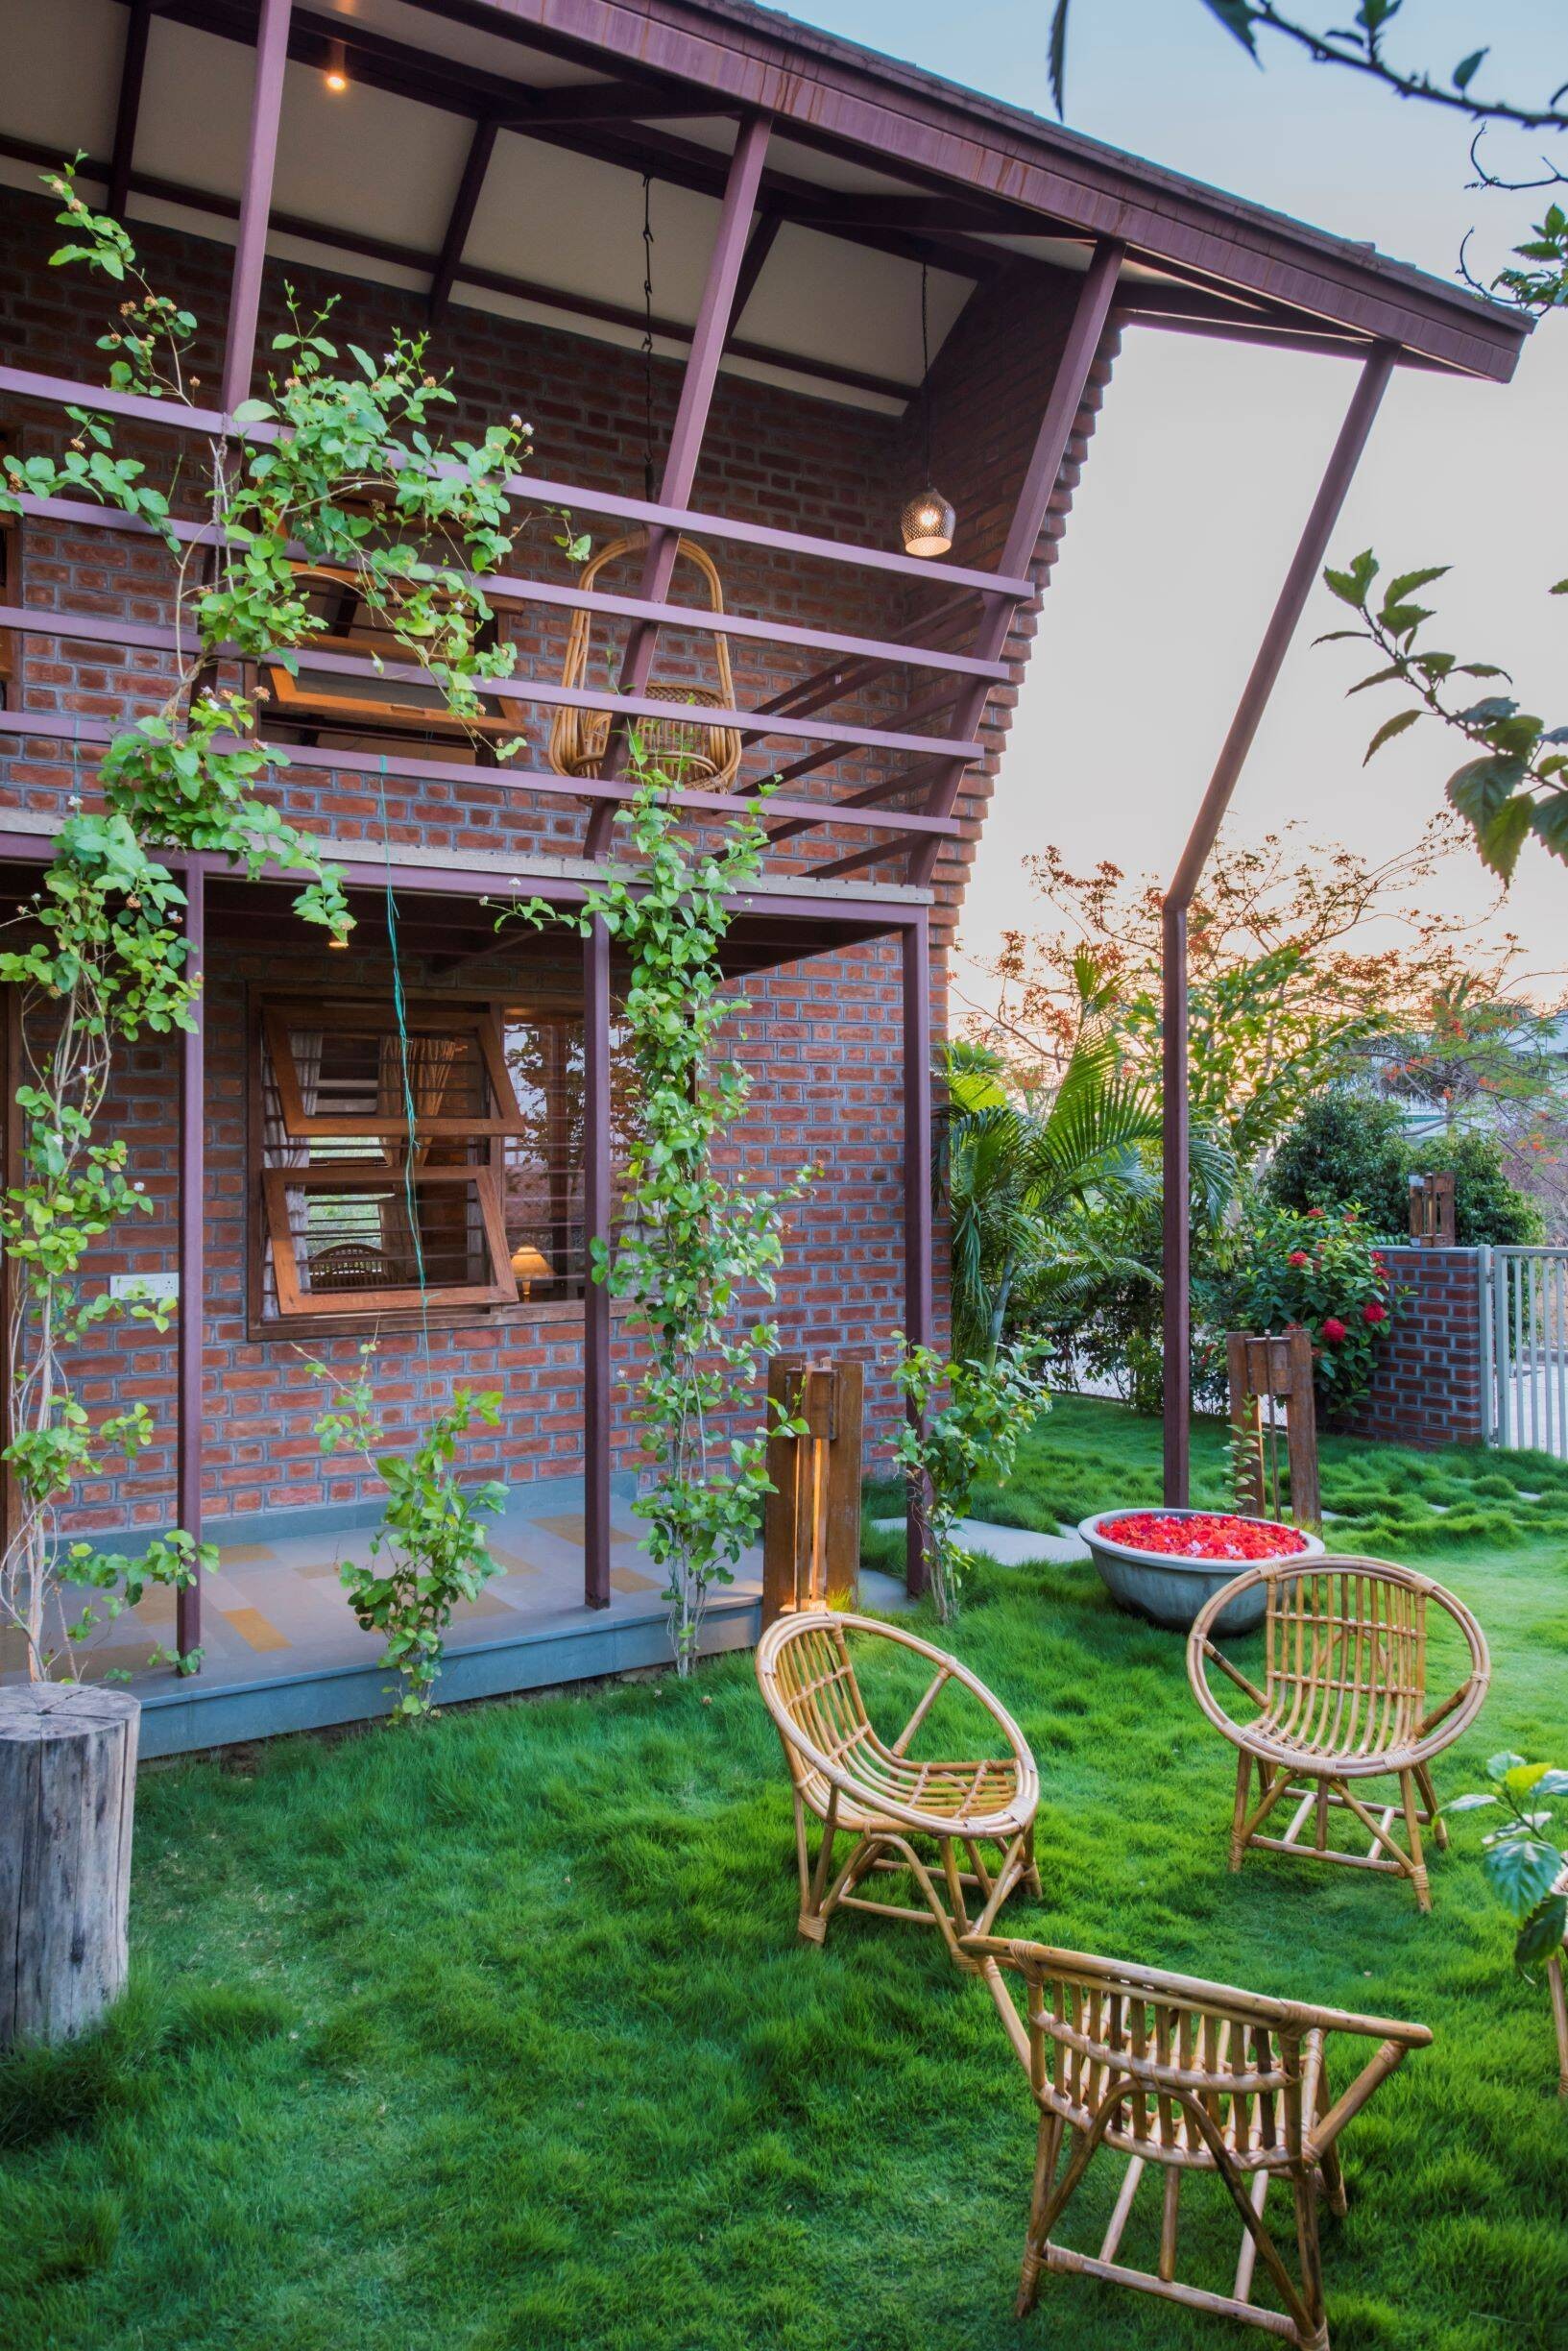 
Thảm cỏ xanh giúp cho căn nhà thêm tươi mát
